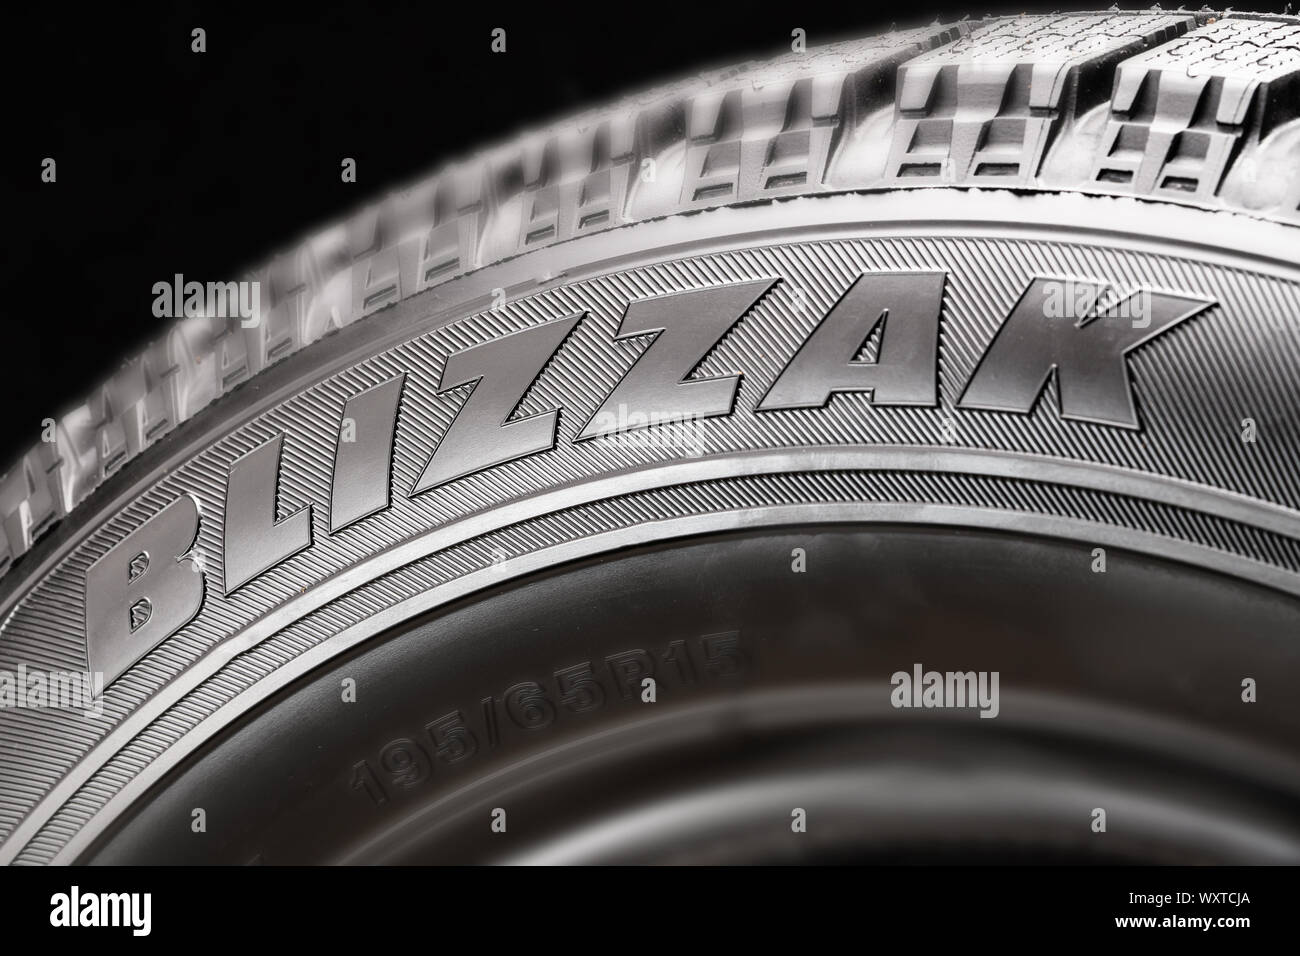 Marque de pneu Banque de photographies et d'images à haute résolution -  Alamy